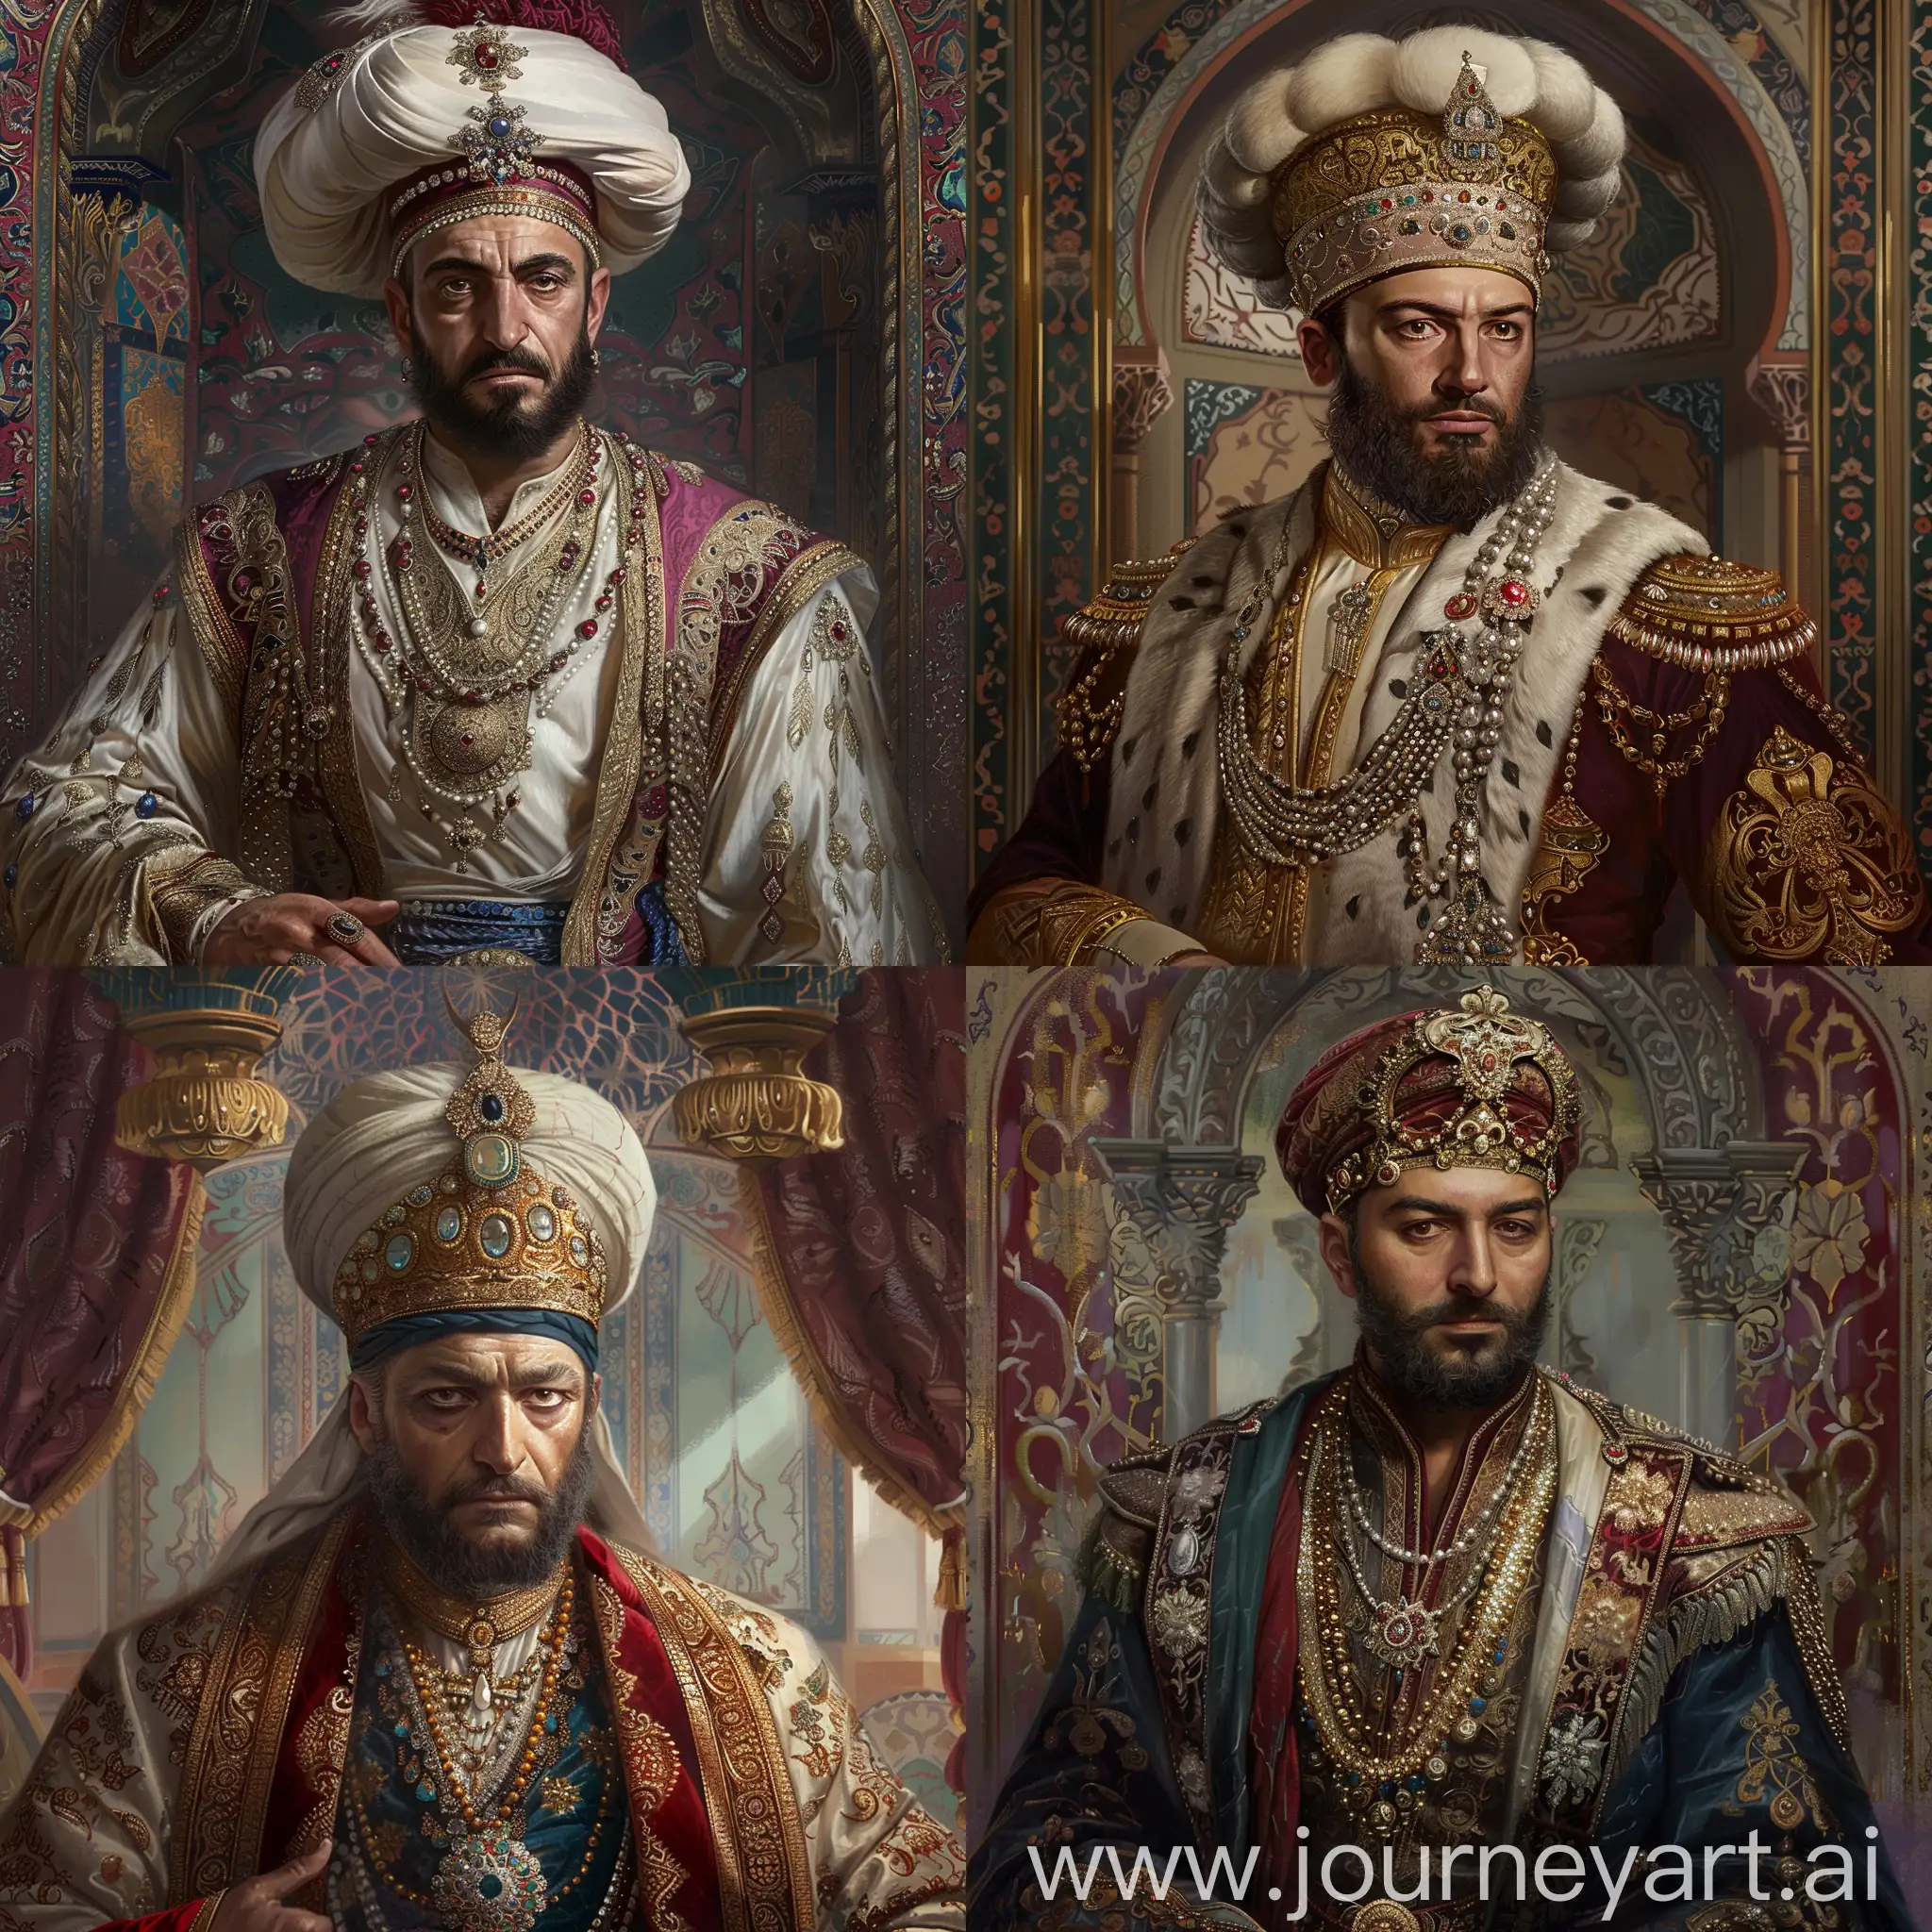 Ottoman-Sultan-Suleiman-the-Magnificent-in-Regal-Attire-with-Cultural-Symbols